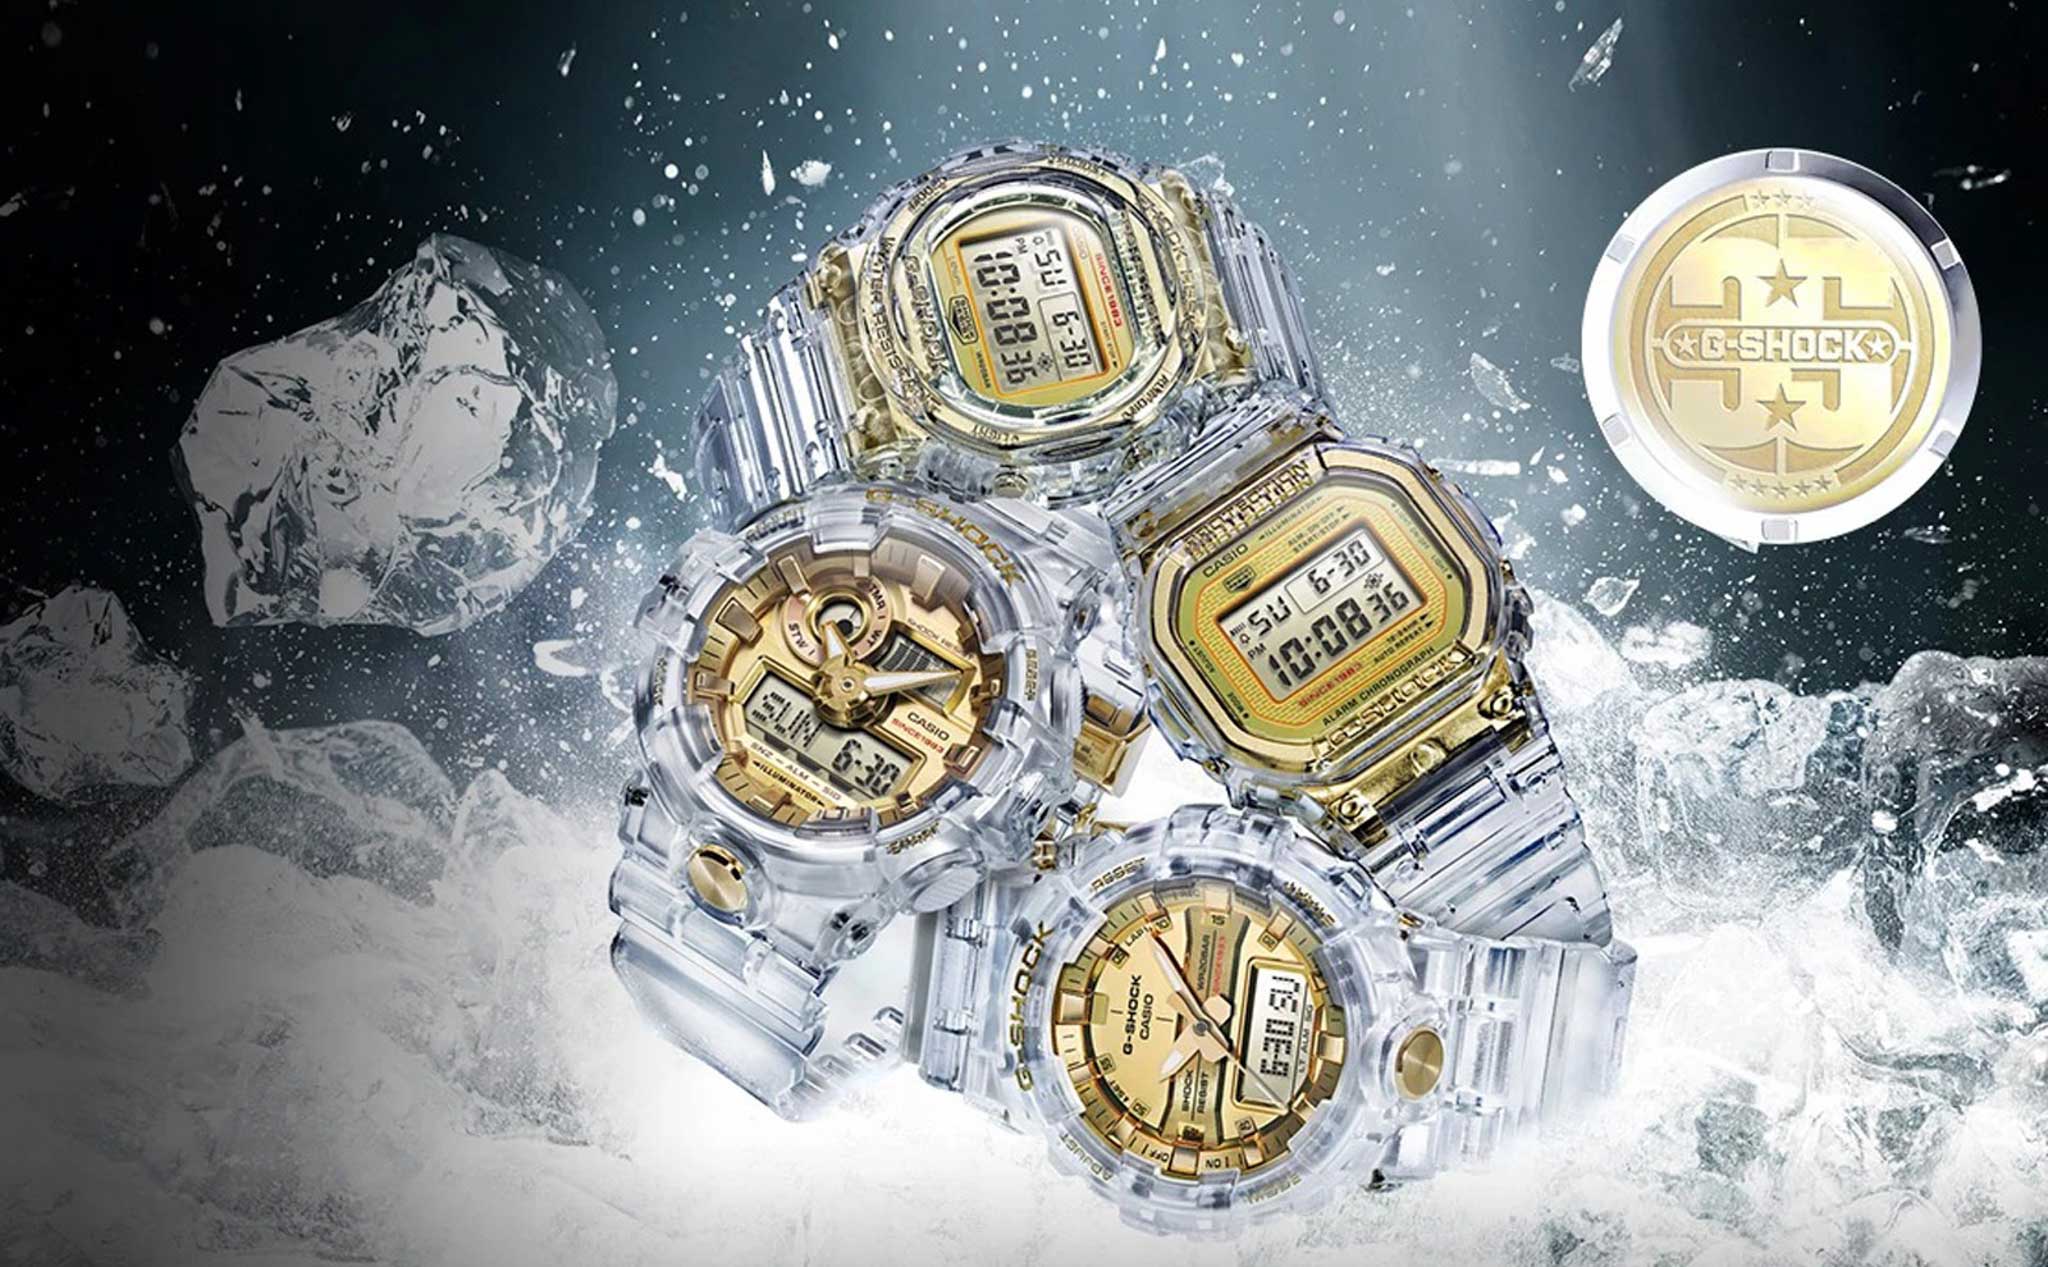 Casio kỷ niệm 35 năm với loạt đồng hồ G-Shock Glacier Gold, giá từ 160 USD